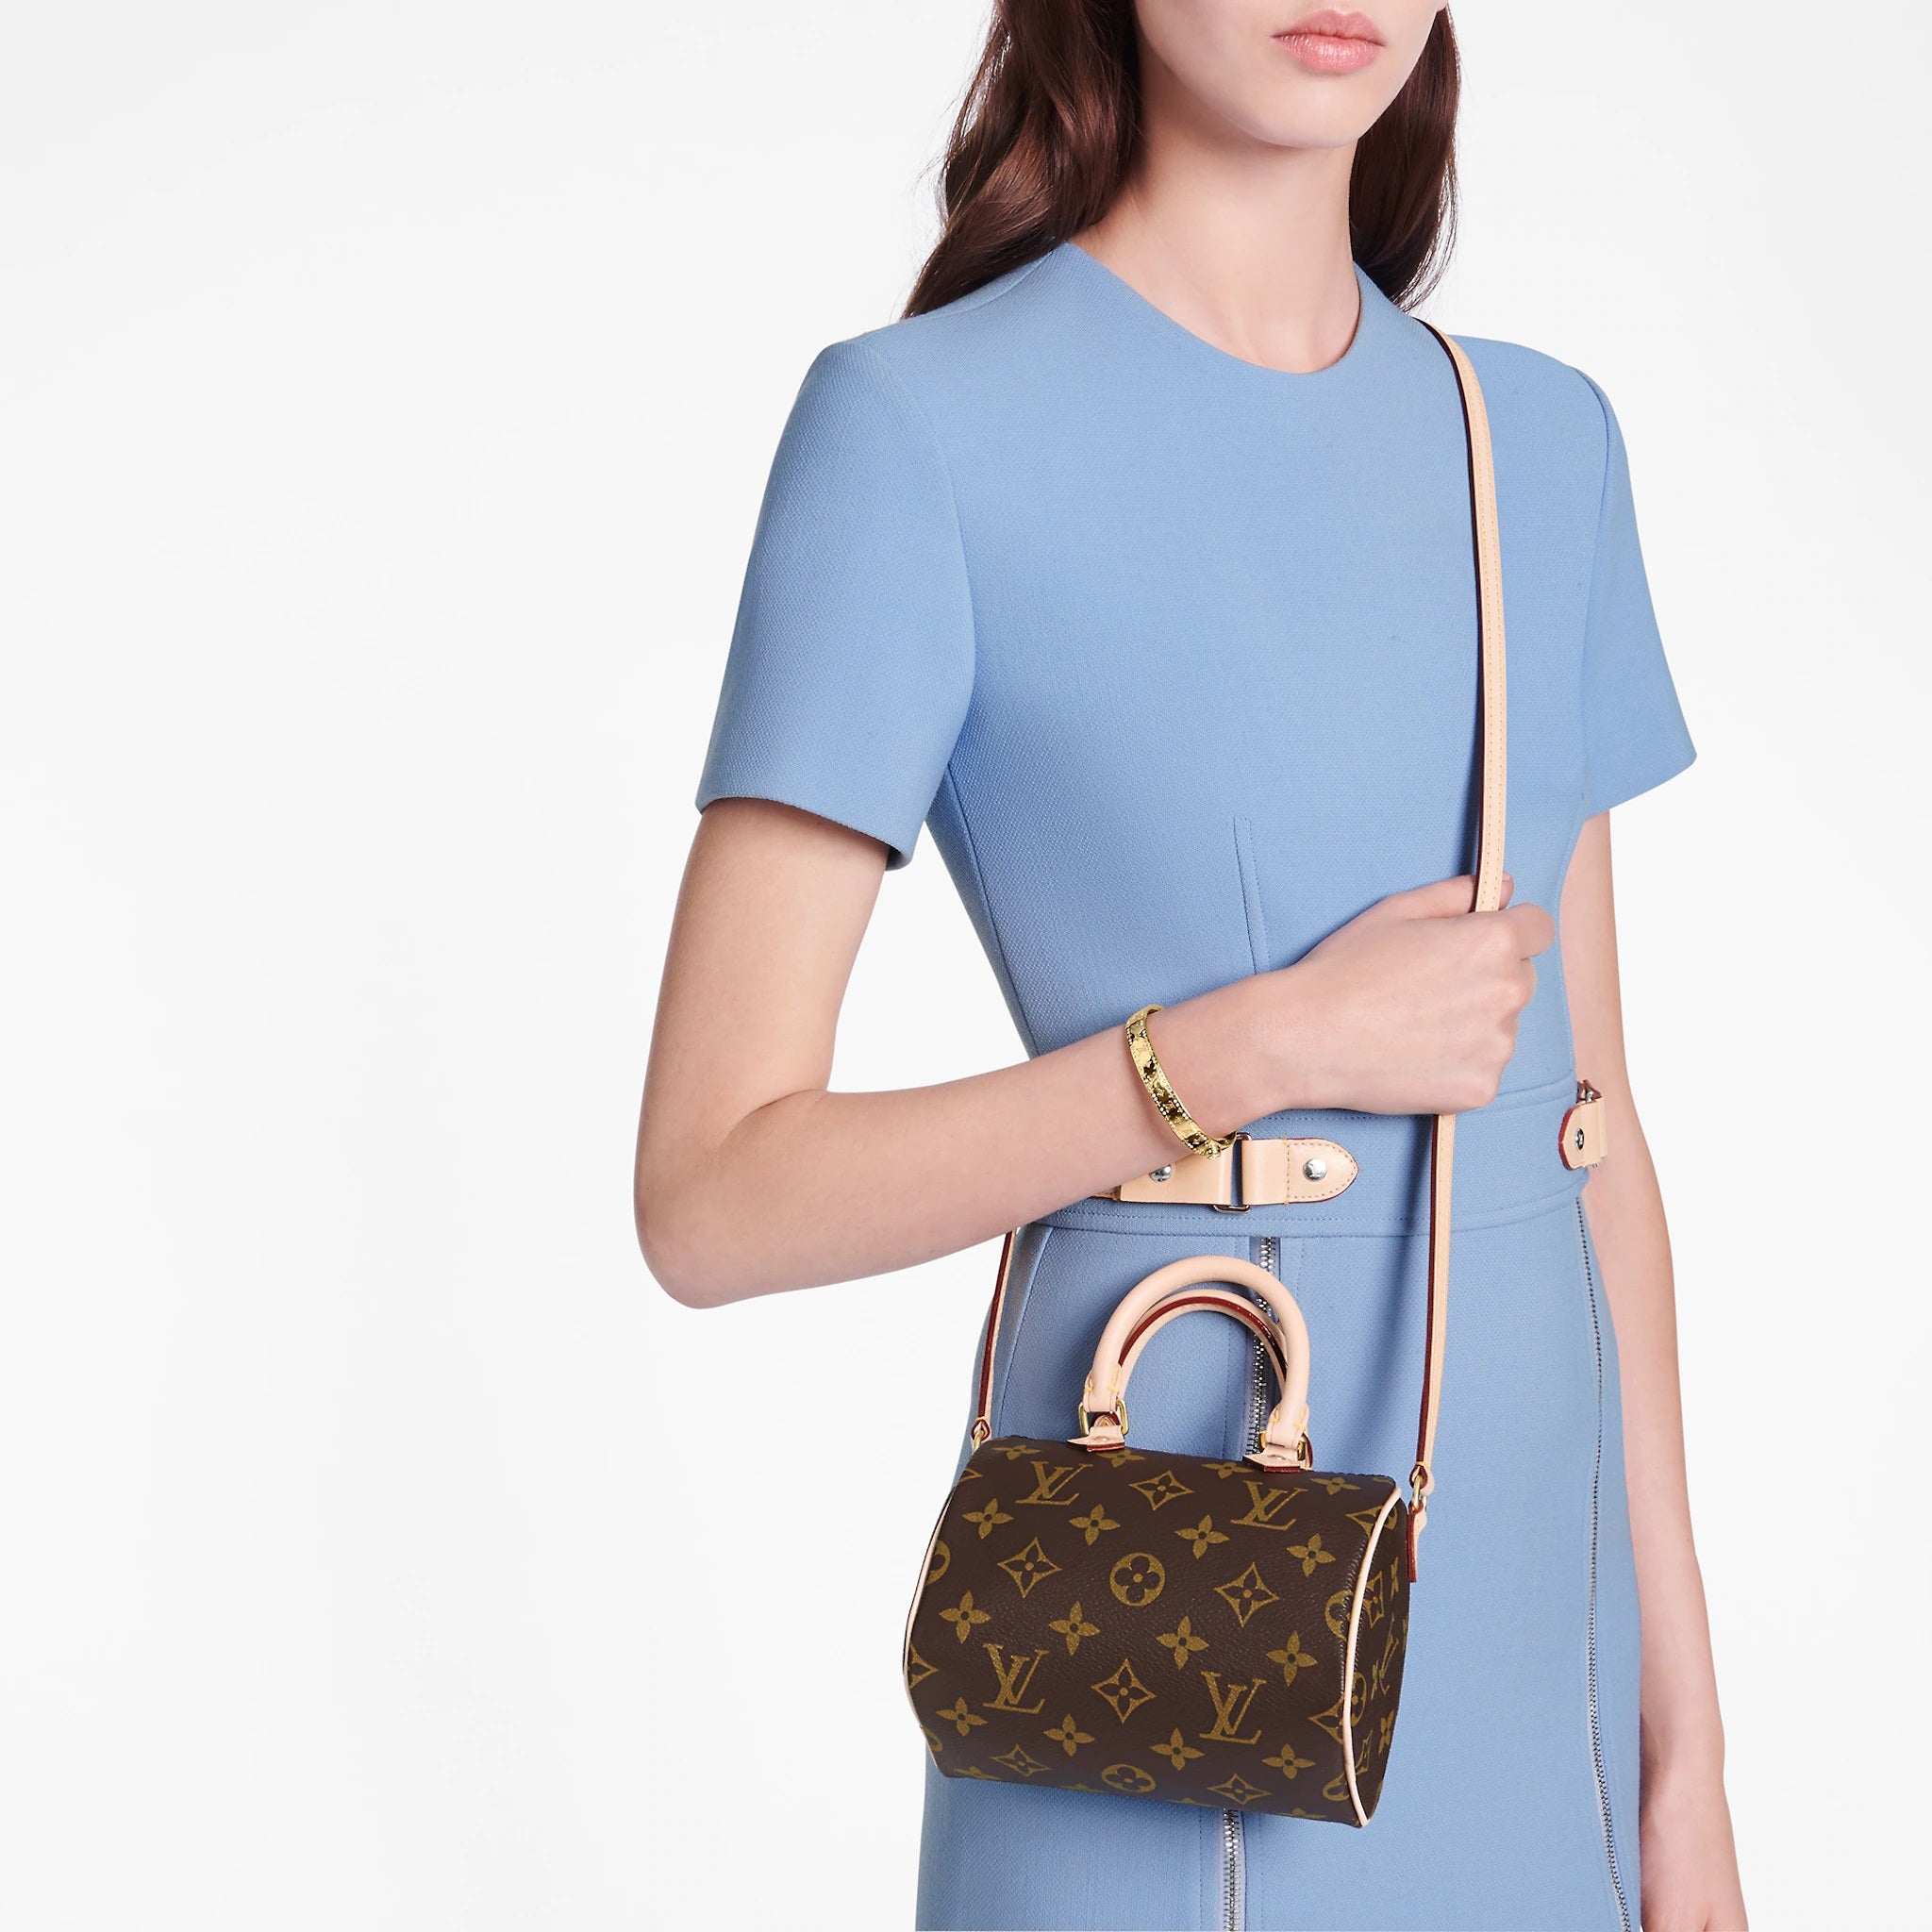 Which Louis Vuitton Handbag Is the Cheapest? Louis Vuitton Purses Under $1,500 Louis Vuitton Nano Speedy purse